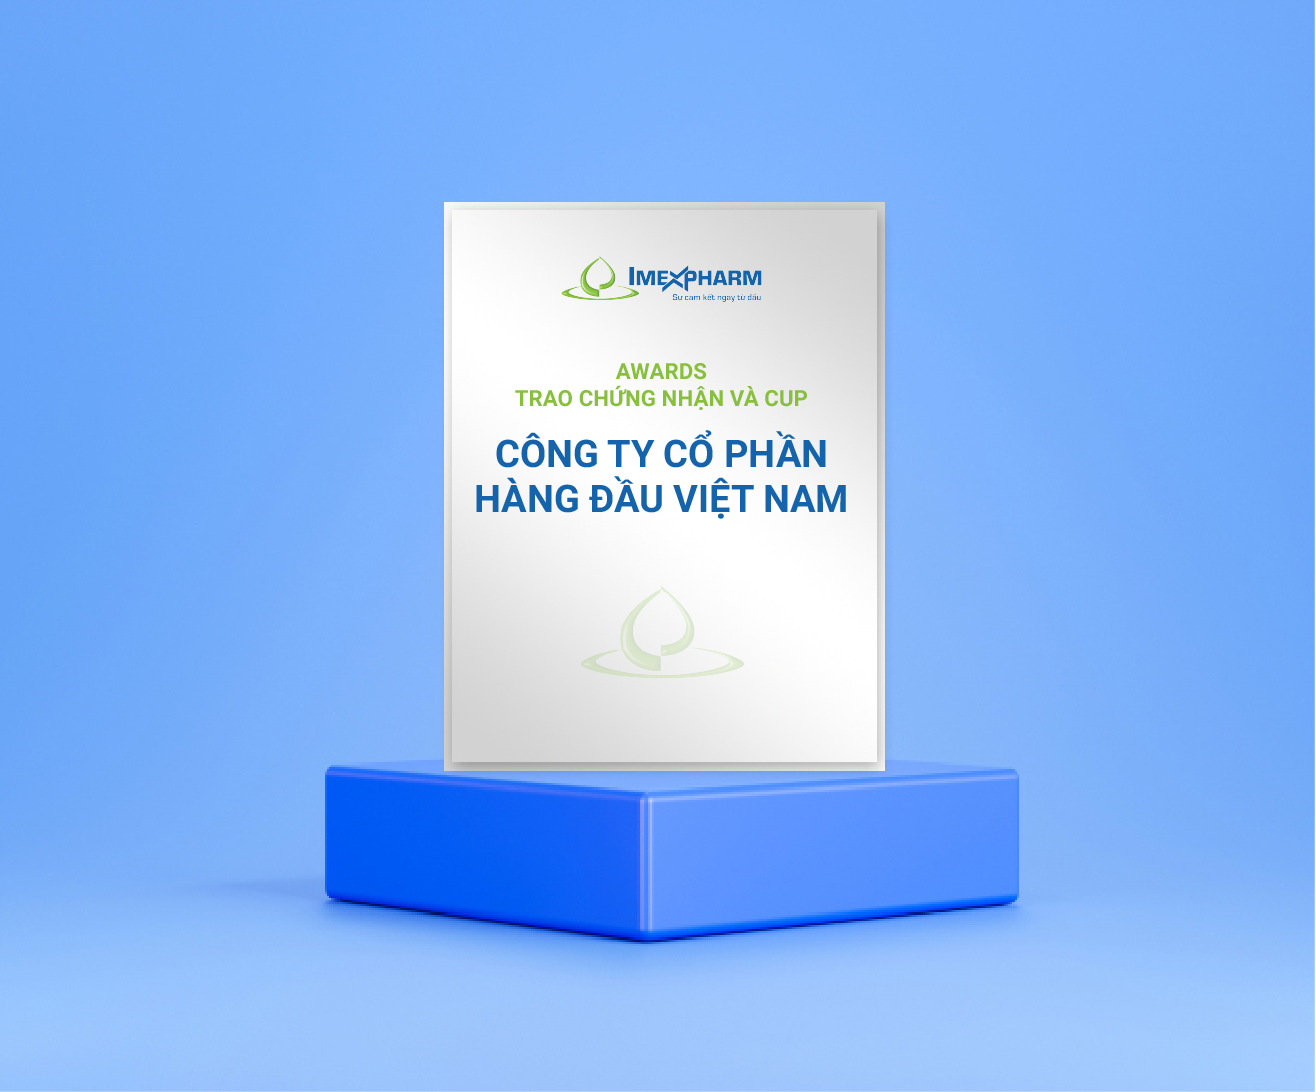 AWARDS trao chứng nhận và cup “Công ty cổ phần hàng đầu Việt Nam”